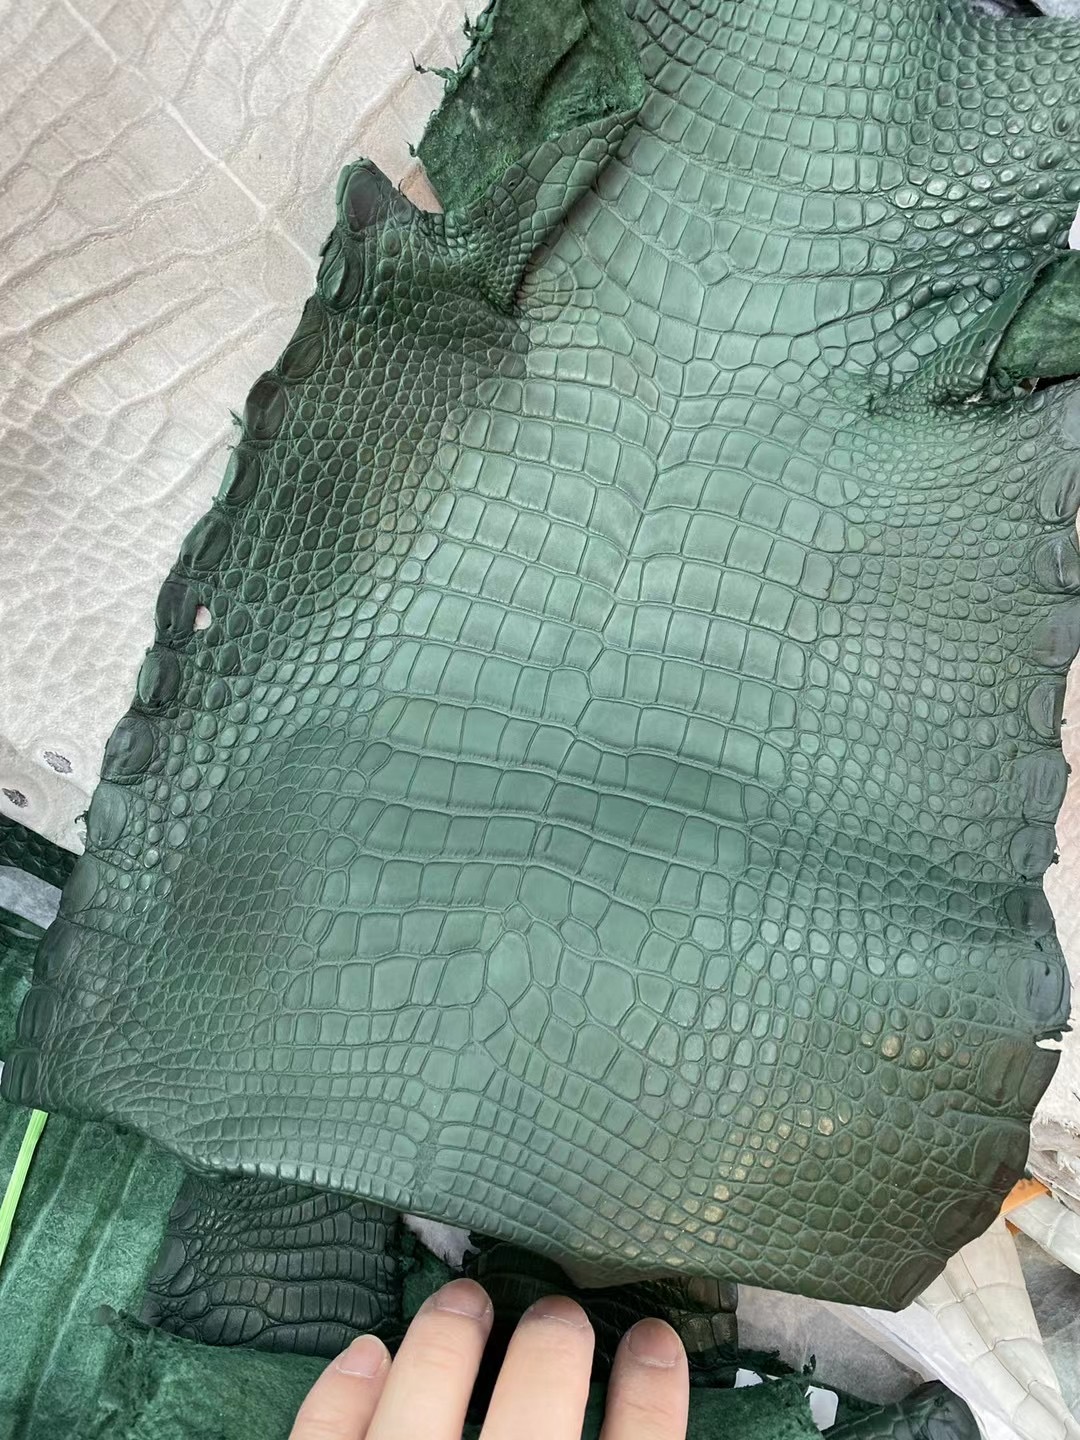 愛馬仕新到皮霧面美洲鱷魚 Hermes Z6 Malachite 孔雀綠 Matte Alligator Crocodile